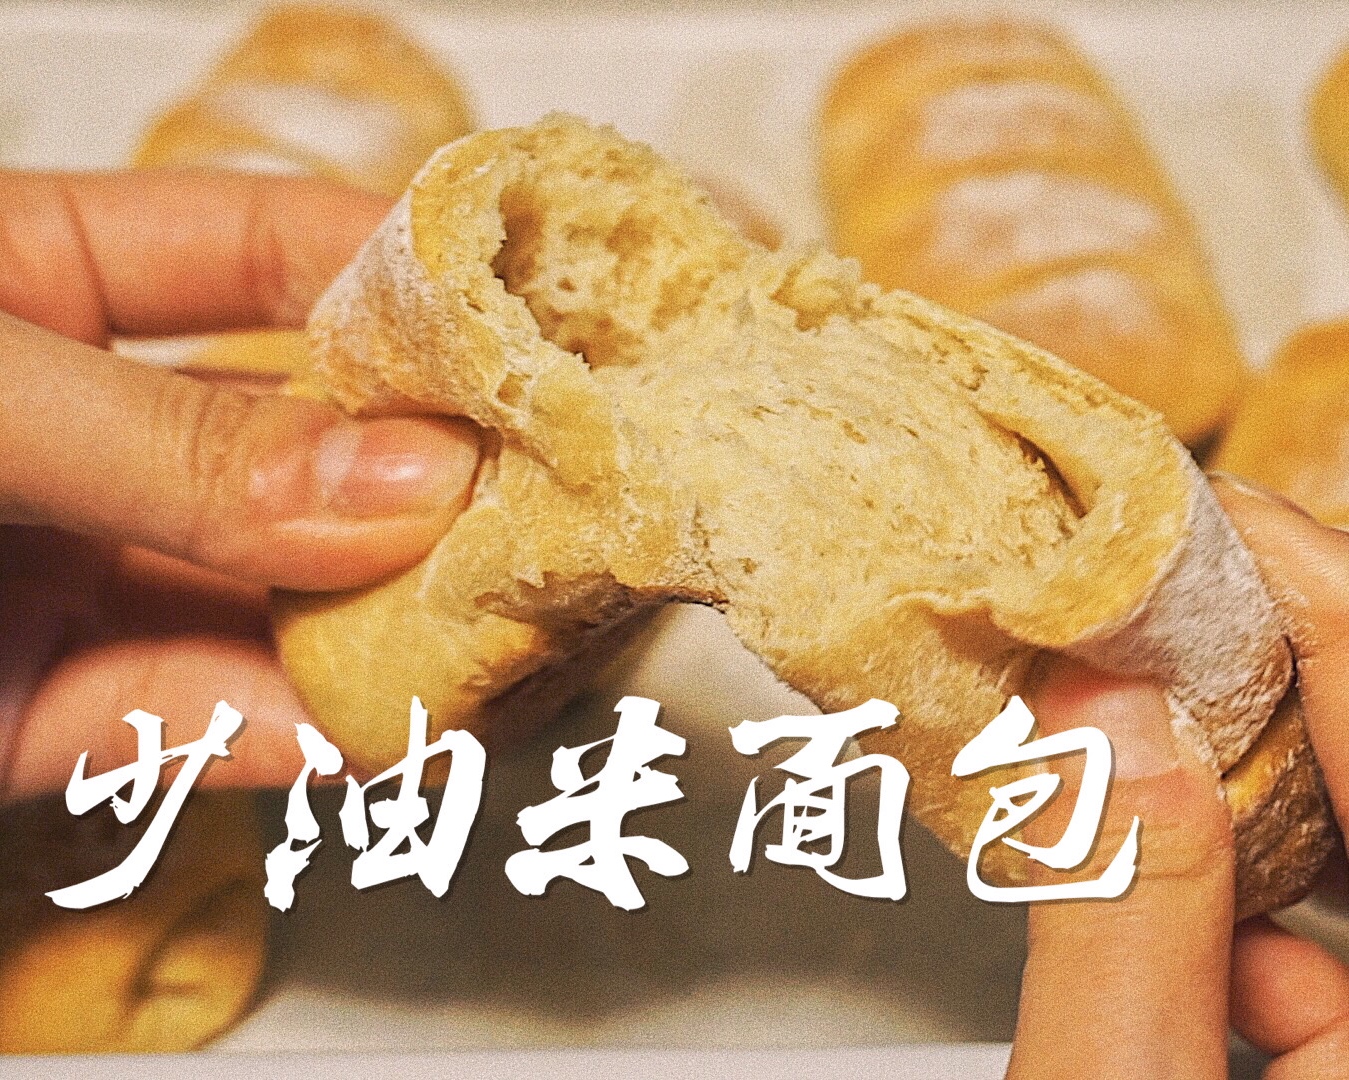 少油米面包【健康烘培】